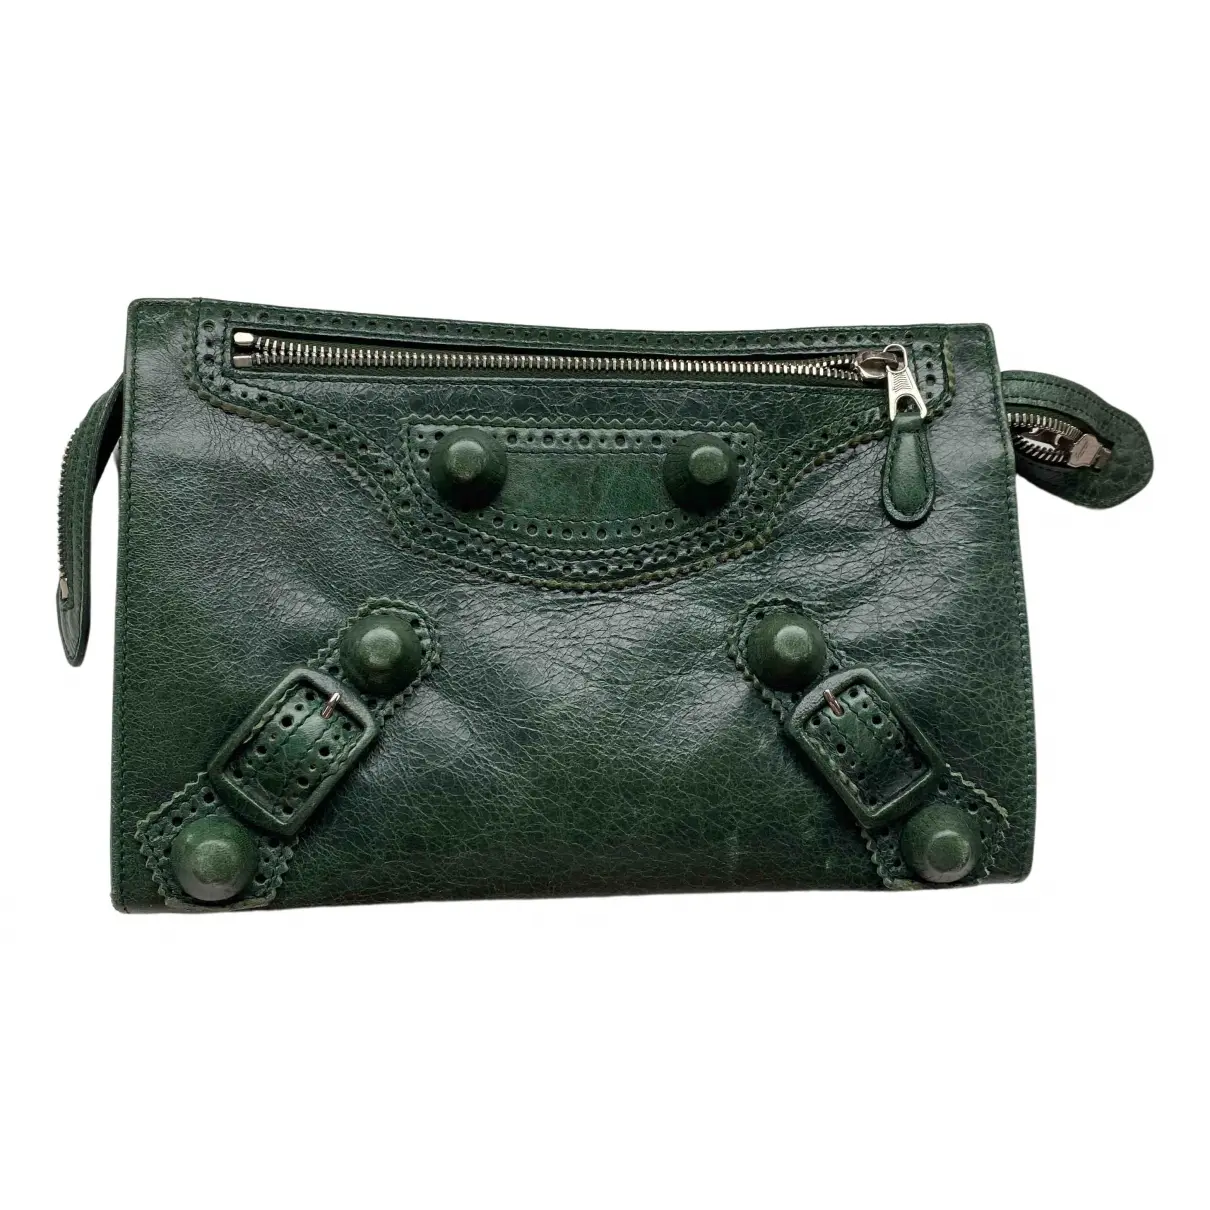 Work leather clutch bag Balenciaga